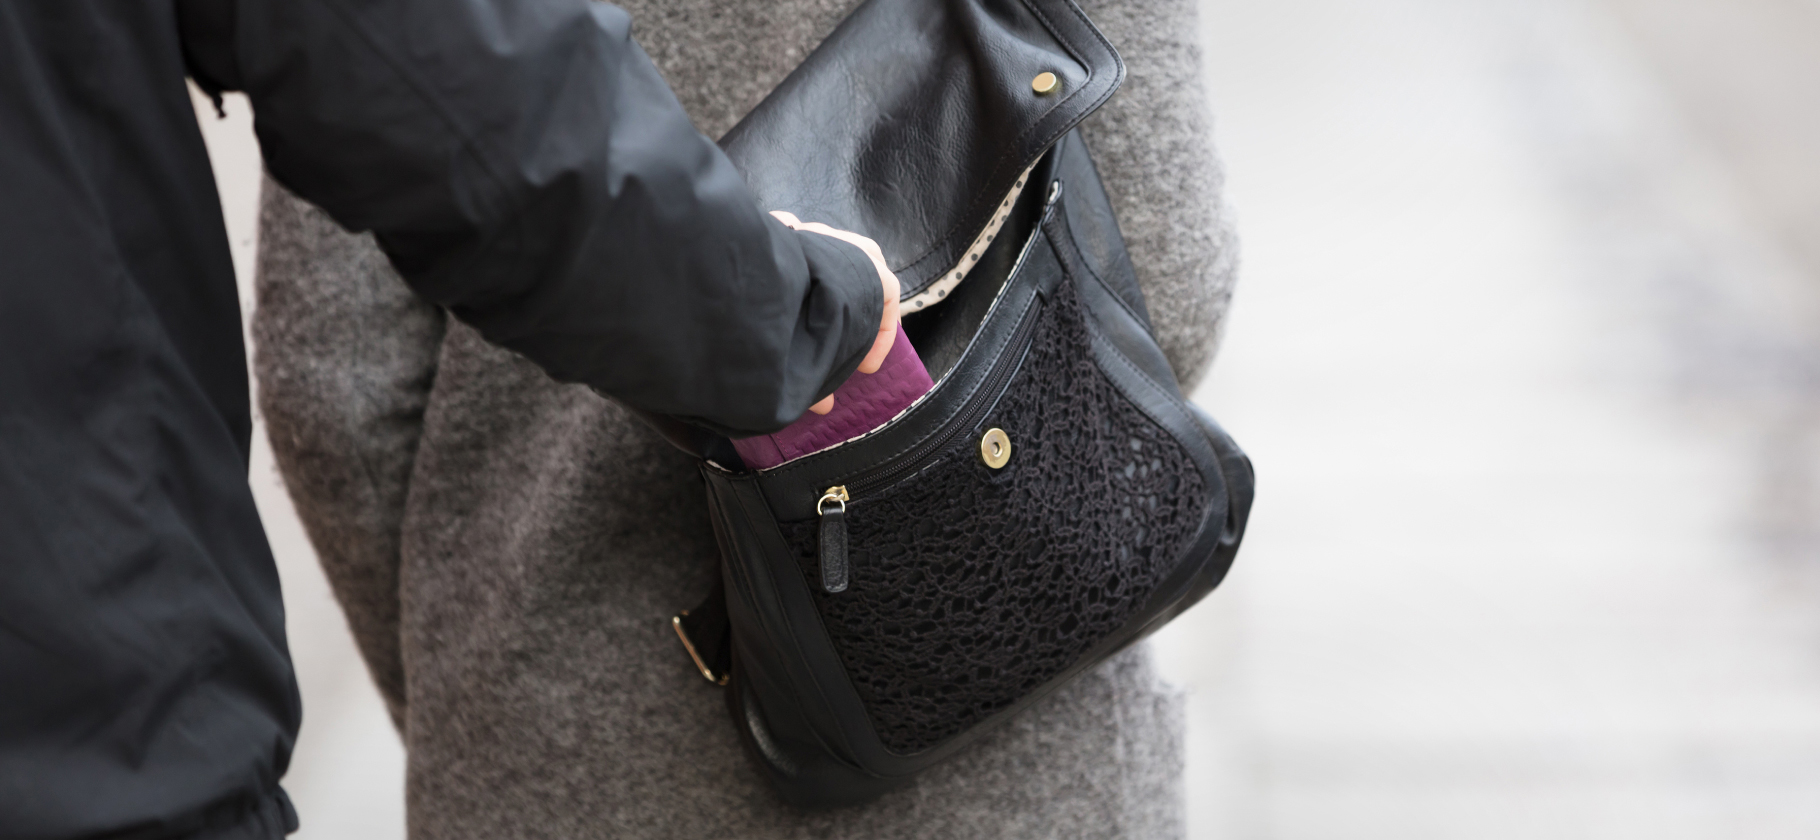 «Смотрю на сумку и вижу, что она шевелится»: 7 историй о карманных кражах